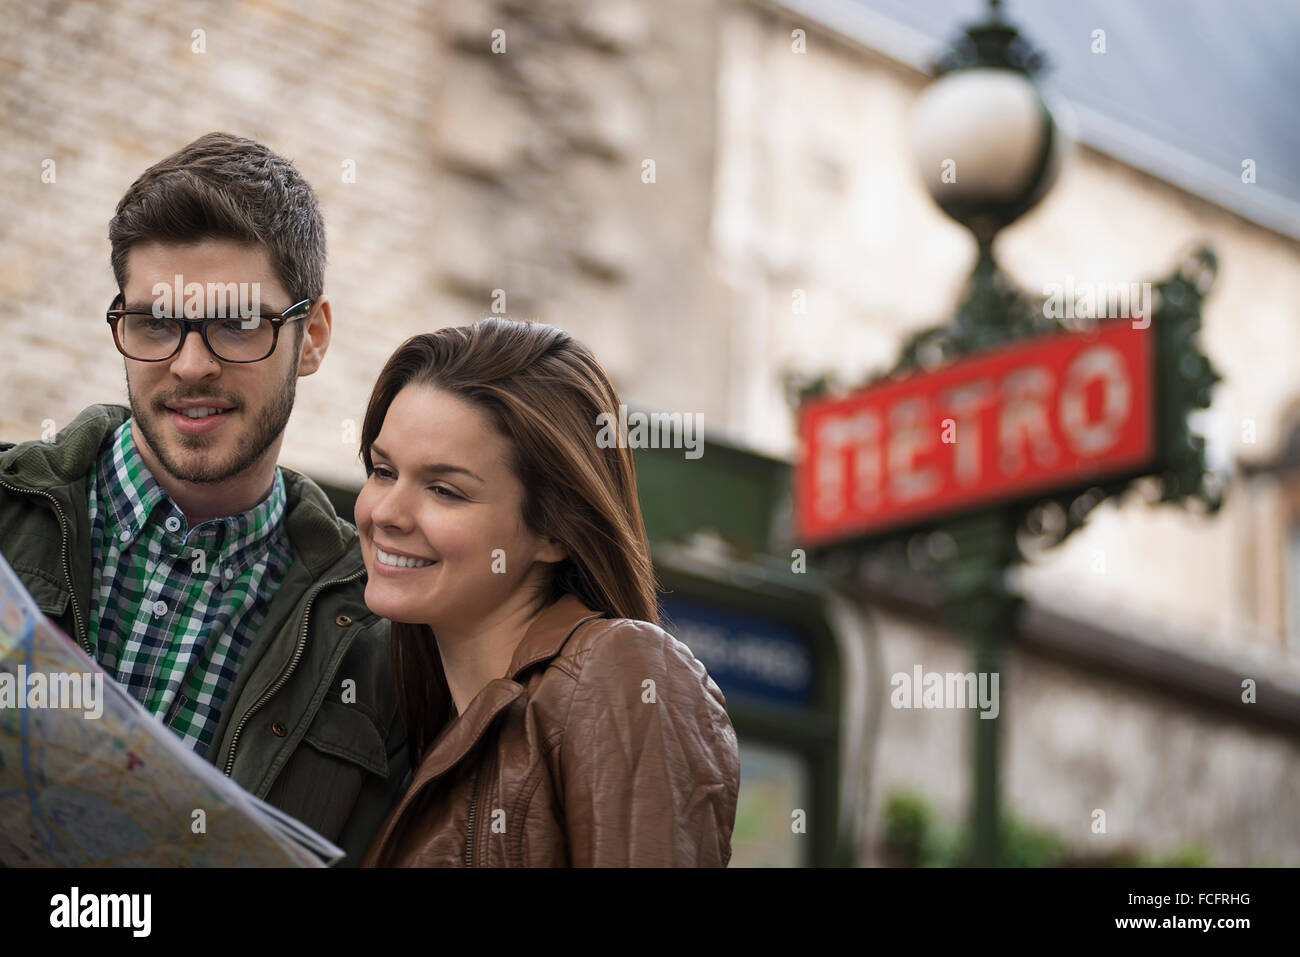 Un par consultar un mapa en una calle de la ciudad, en un estilo Art Decó clásico signo de Metro. Foto de stock